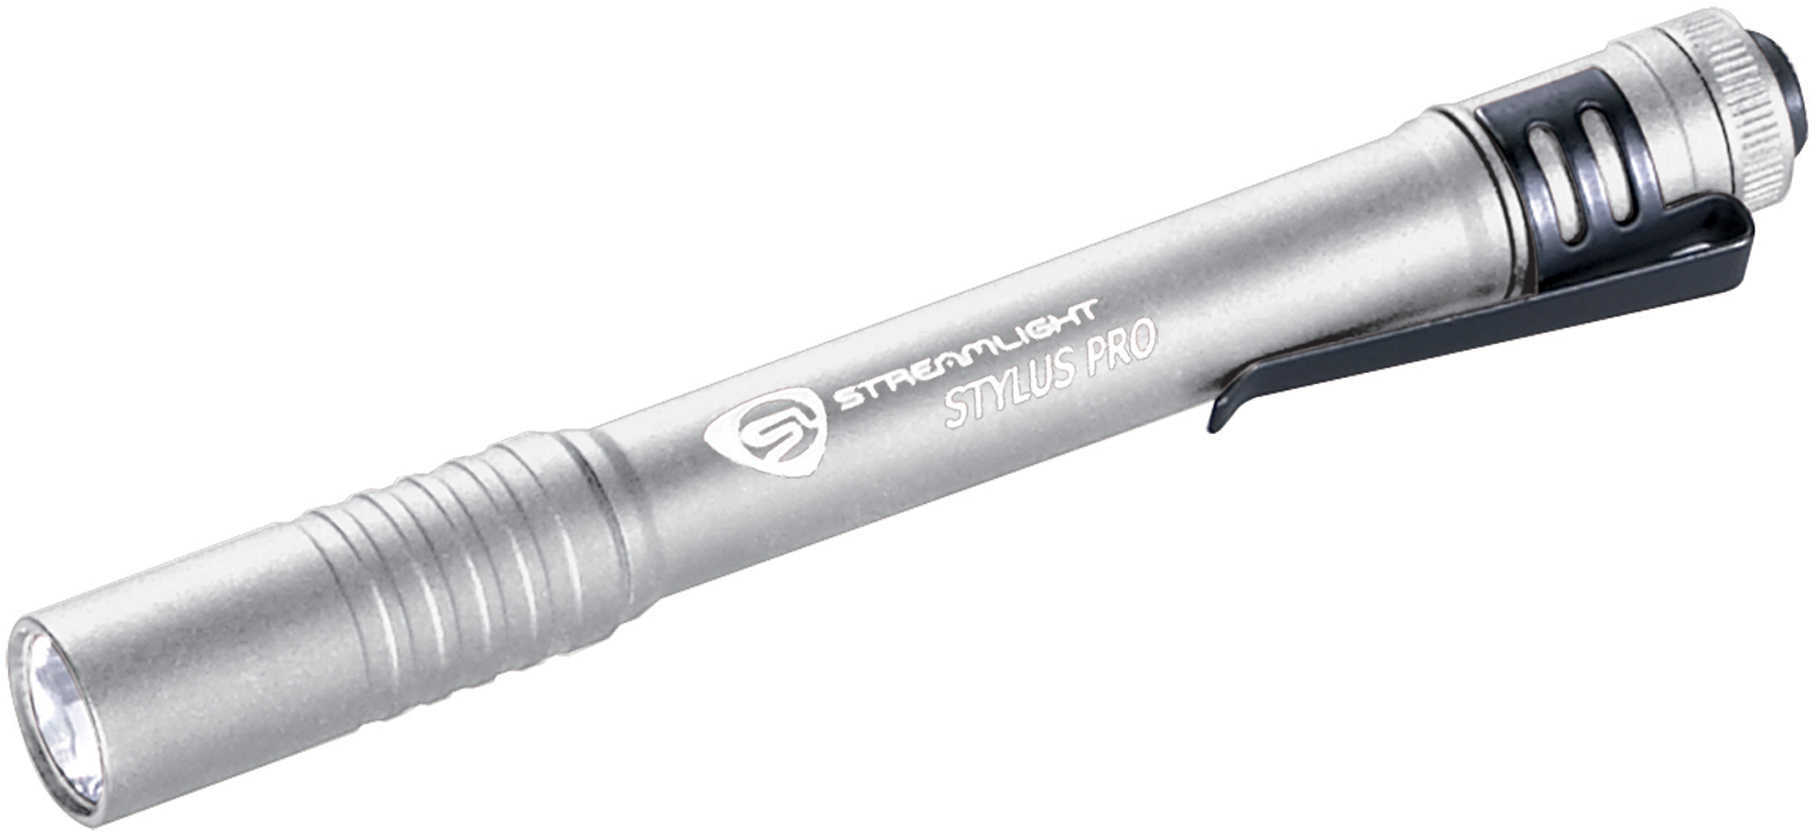 Streamlight Stylus Pro LED Light Silver